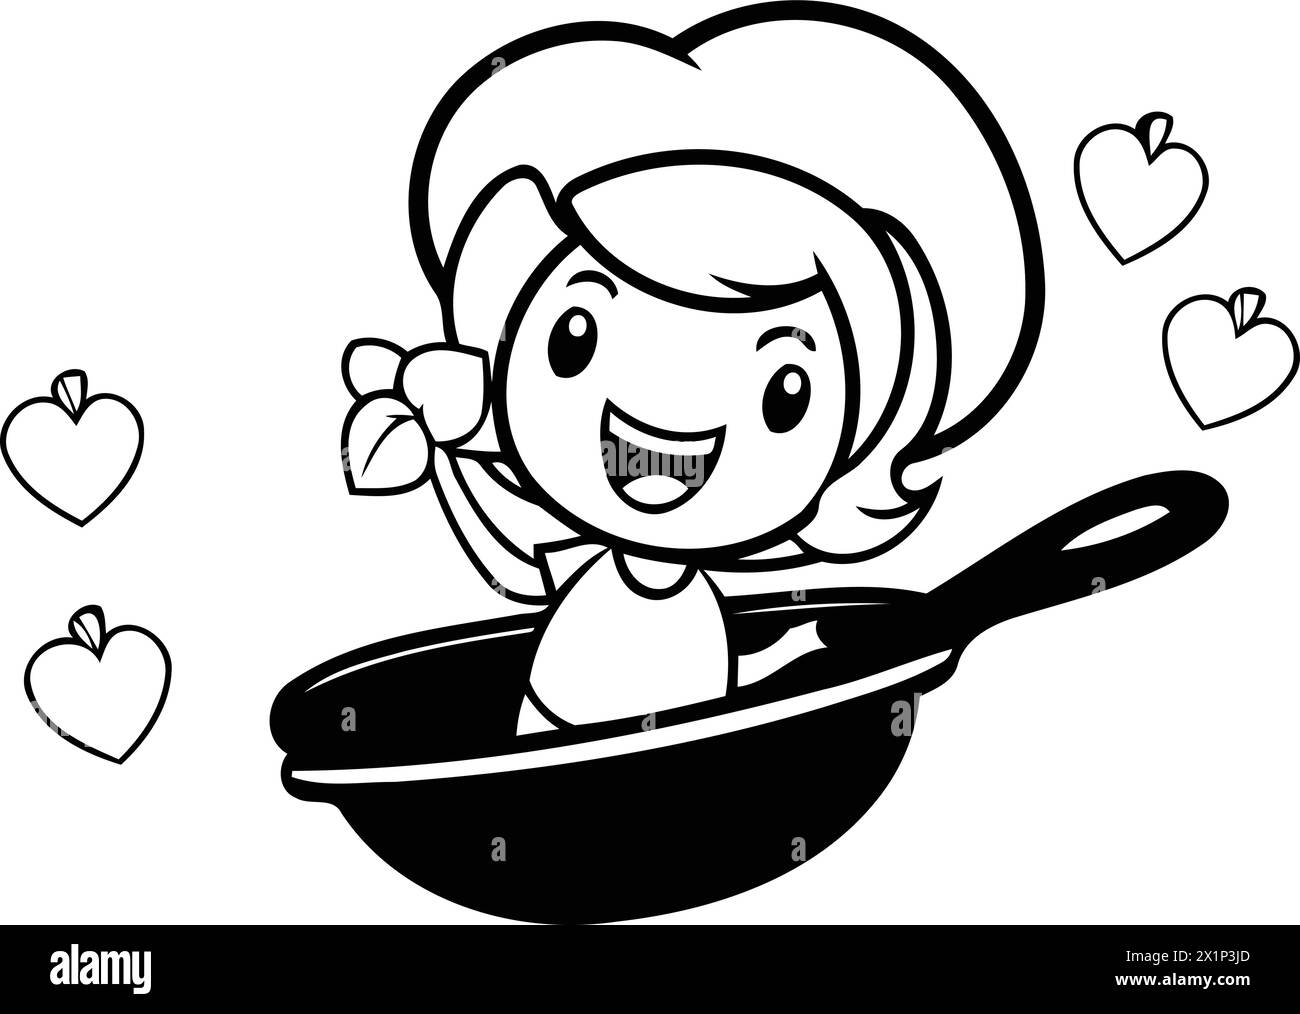 Fille de cuisine de dessin animé dans une casserole avec des coeurs. Illustration vectorielle. Illustration de Vecteur